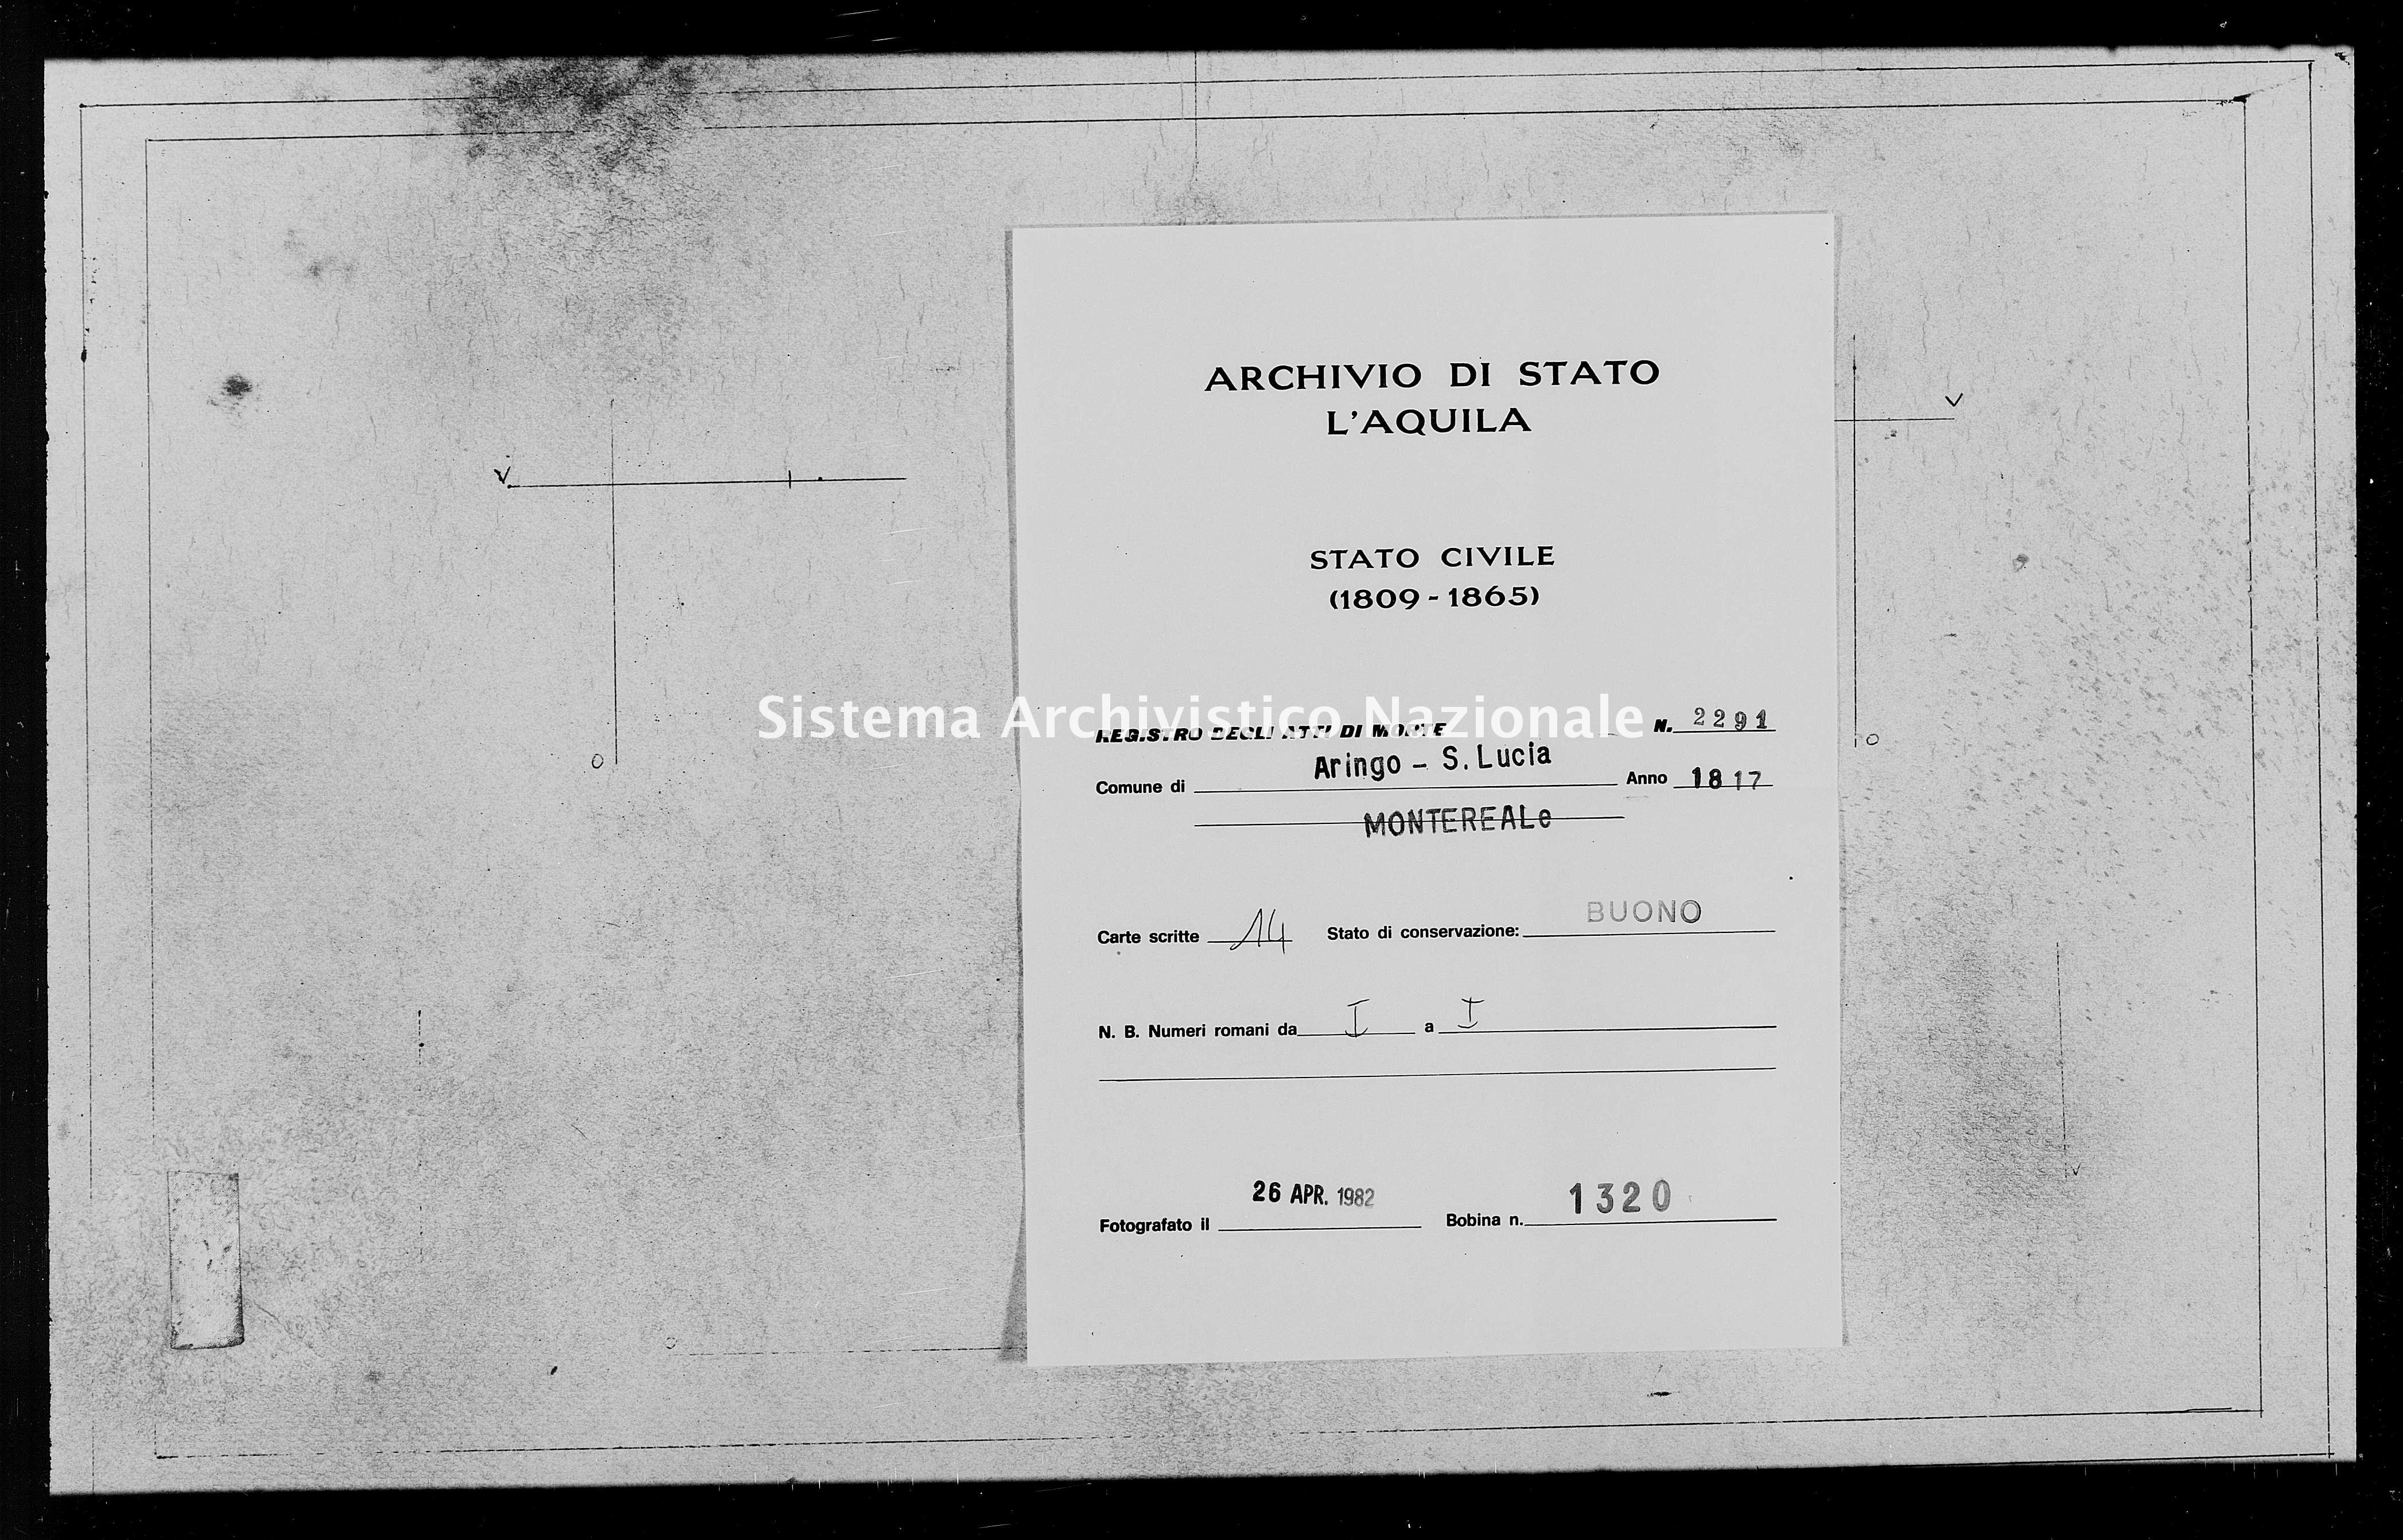 Archivio di stato di L'aquila - Stato civile della restaurazione - Aringo-Santa Lucia - Morti - 1817 - 2291 -